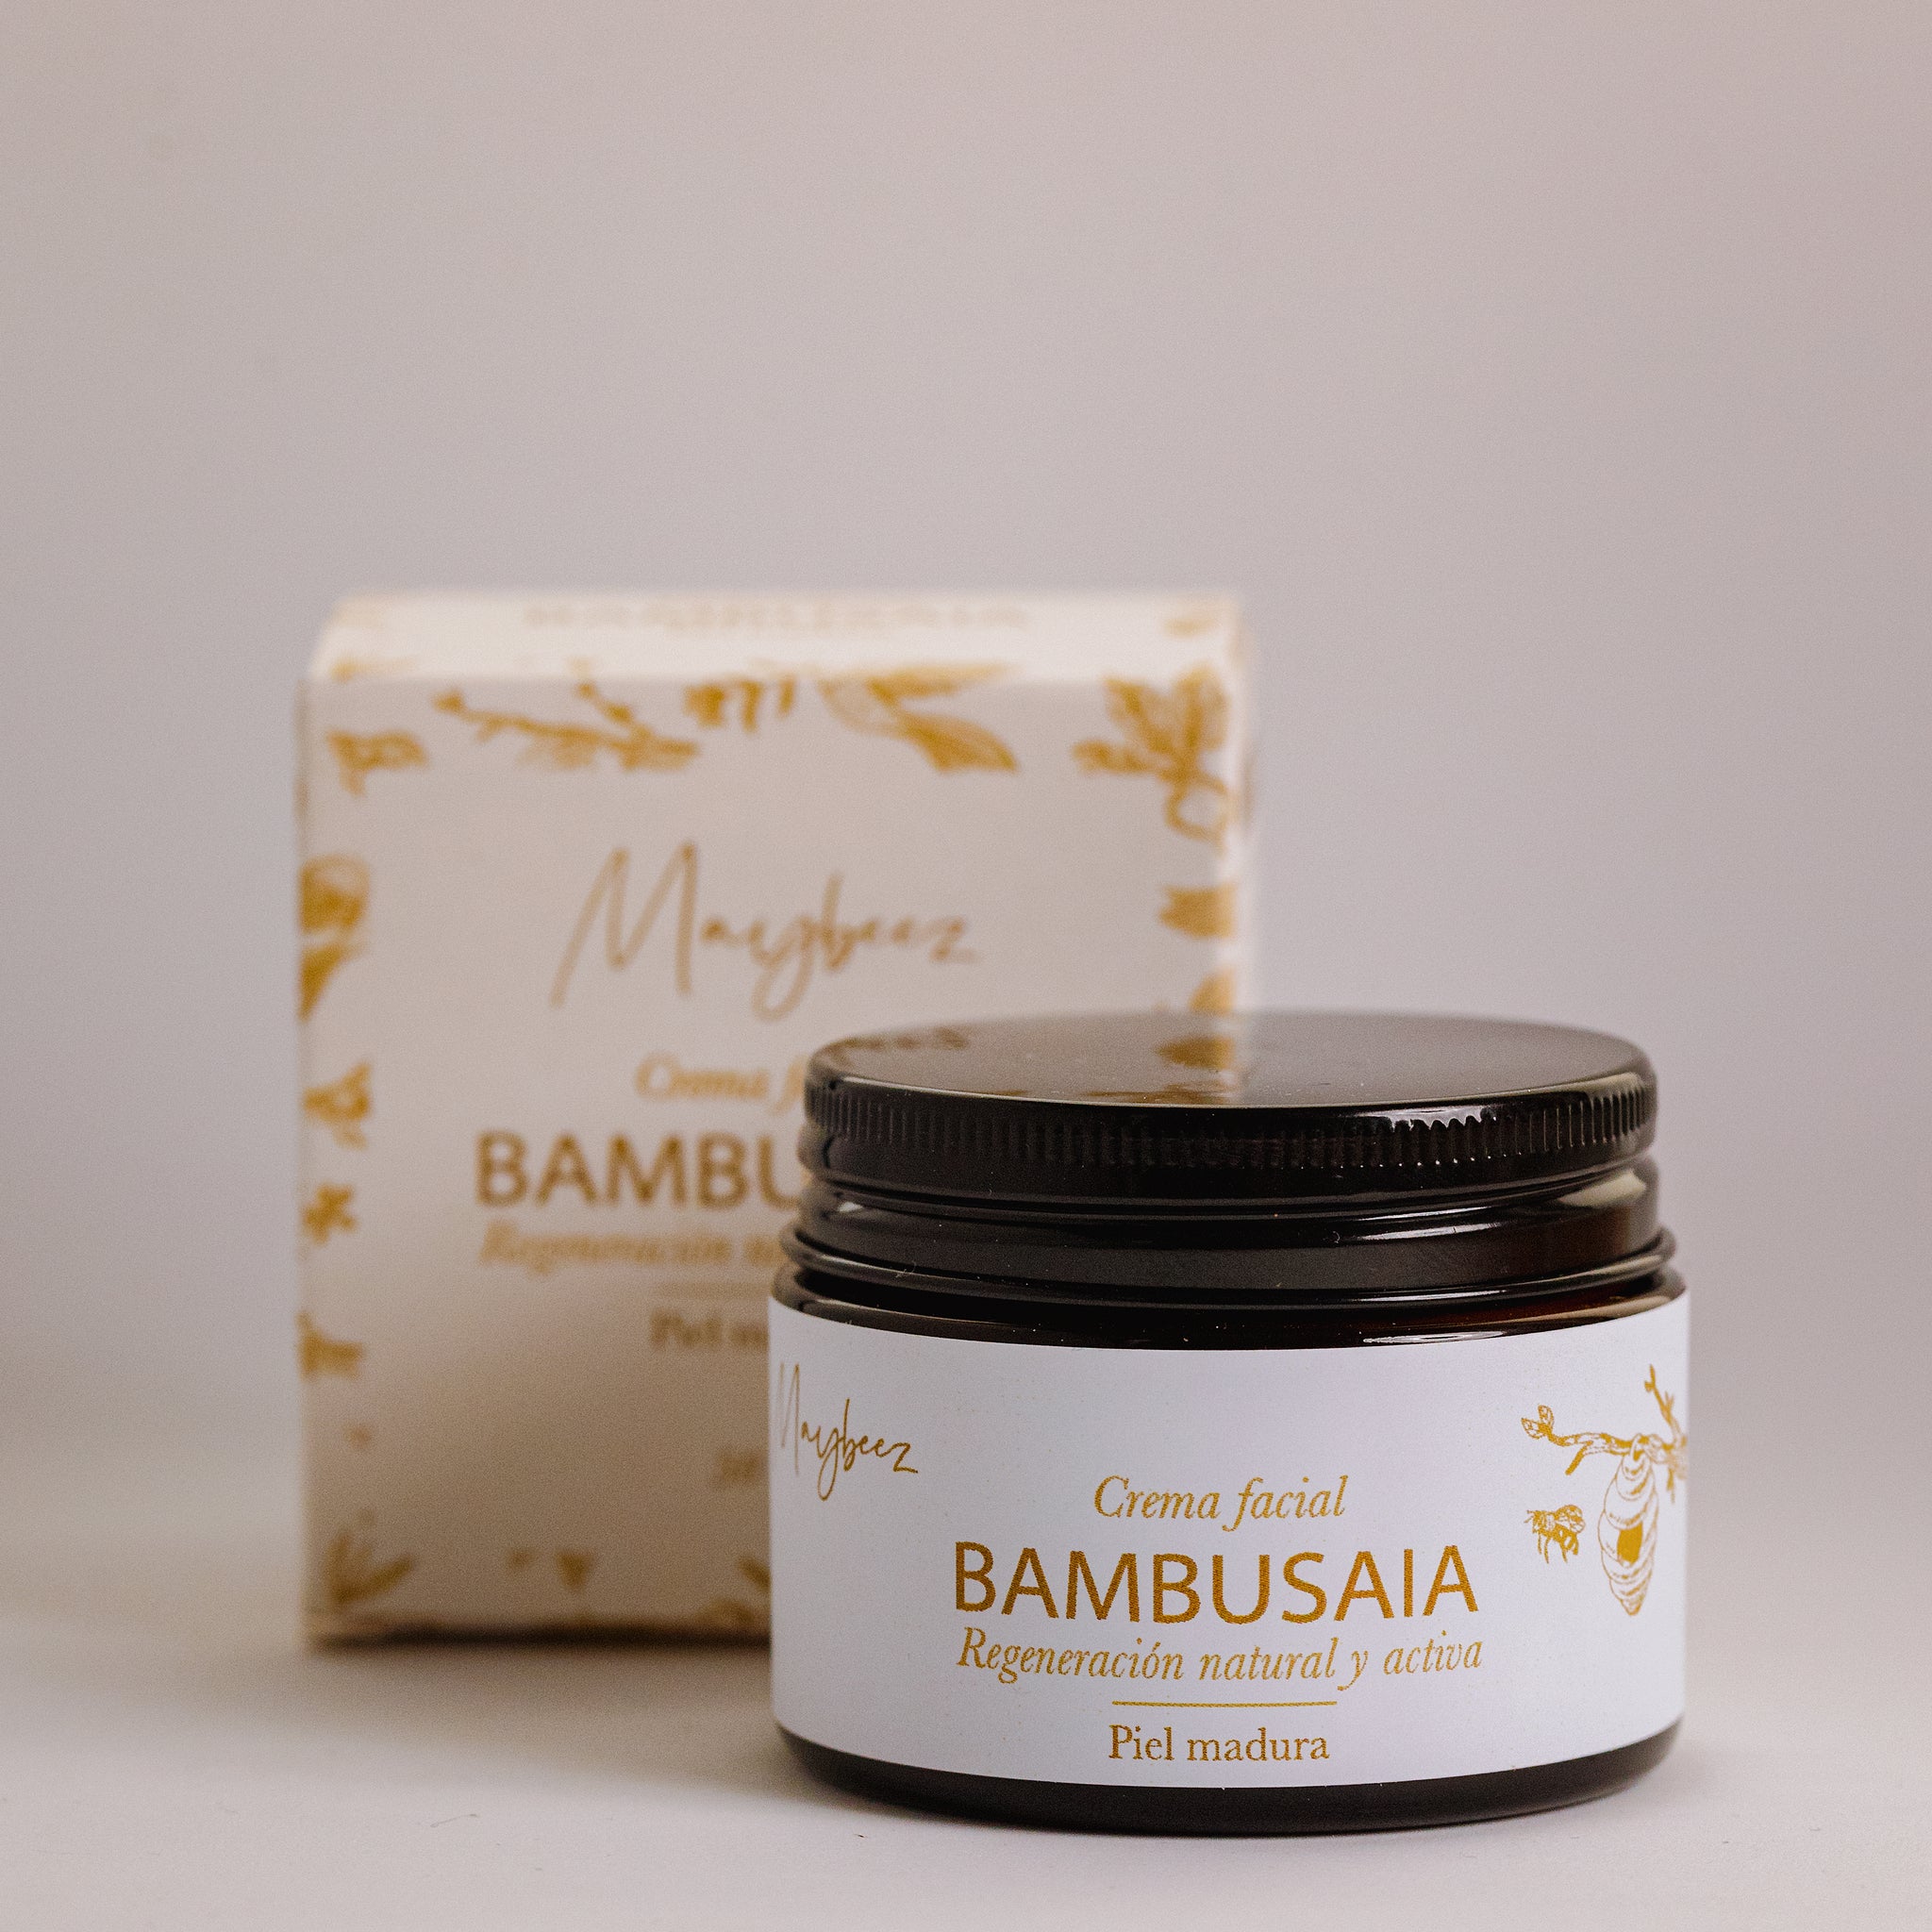 Crema facial "Bambusaia"